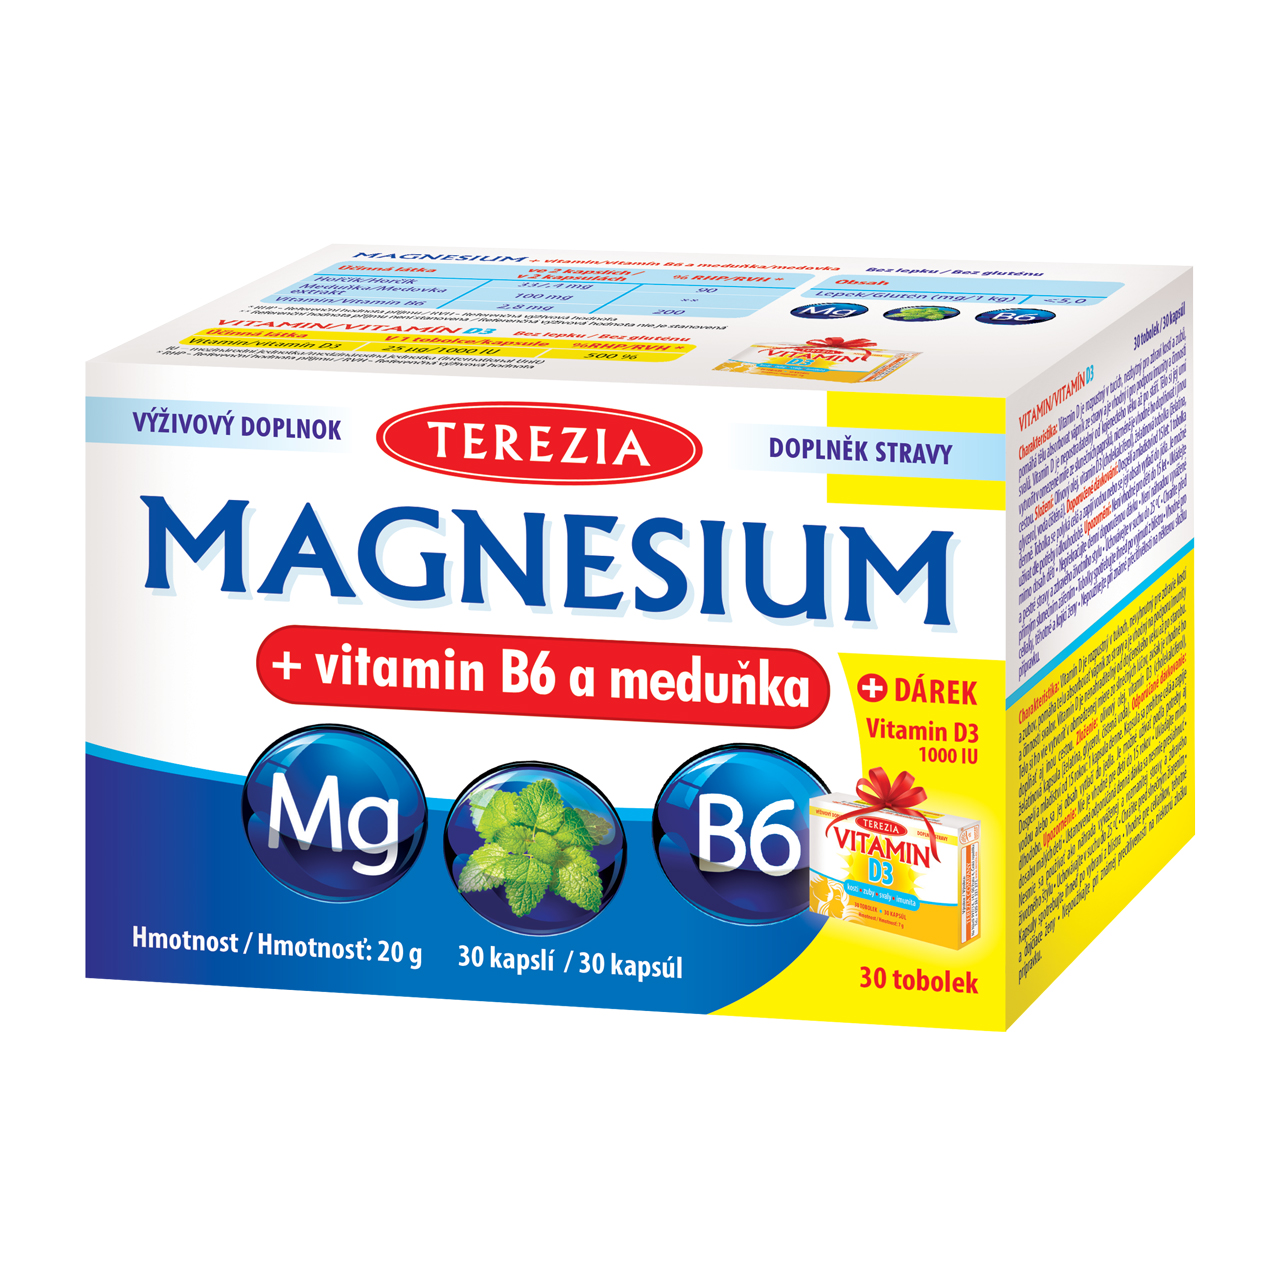 Terezia Company Magnesium + vitamin B6 a meduňka 30 kapslí + DÁREK Vitamin D3 1000 IU 30 tobolek